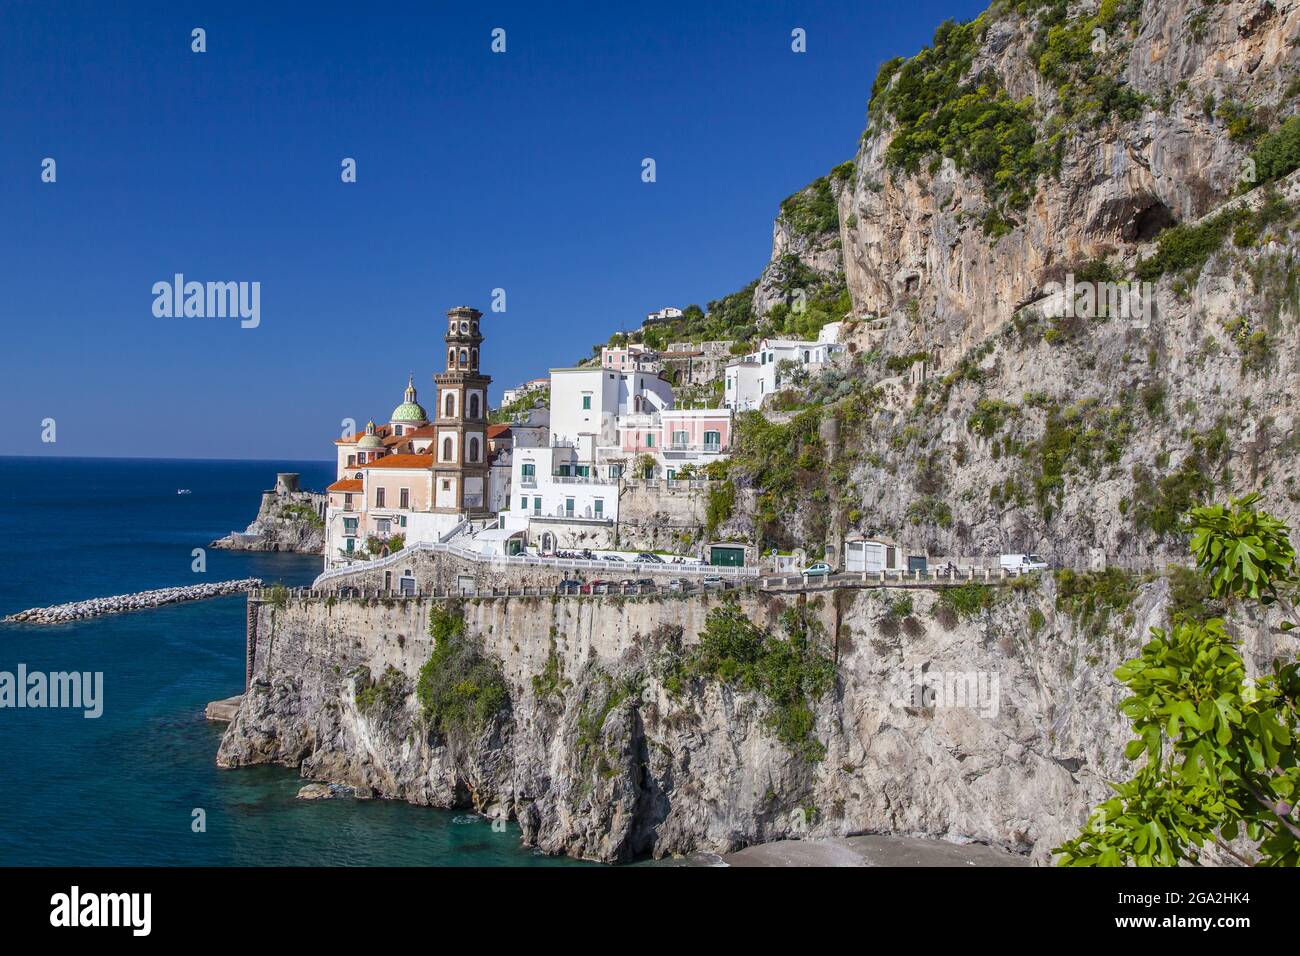 Le village de pêcheurs d'Atrani, le long de la côte amalfitaine avec l'église en dôme et le clocher de la Collégiata di Santa Maria Maddalena sur la roche ... Banque D'Images